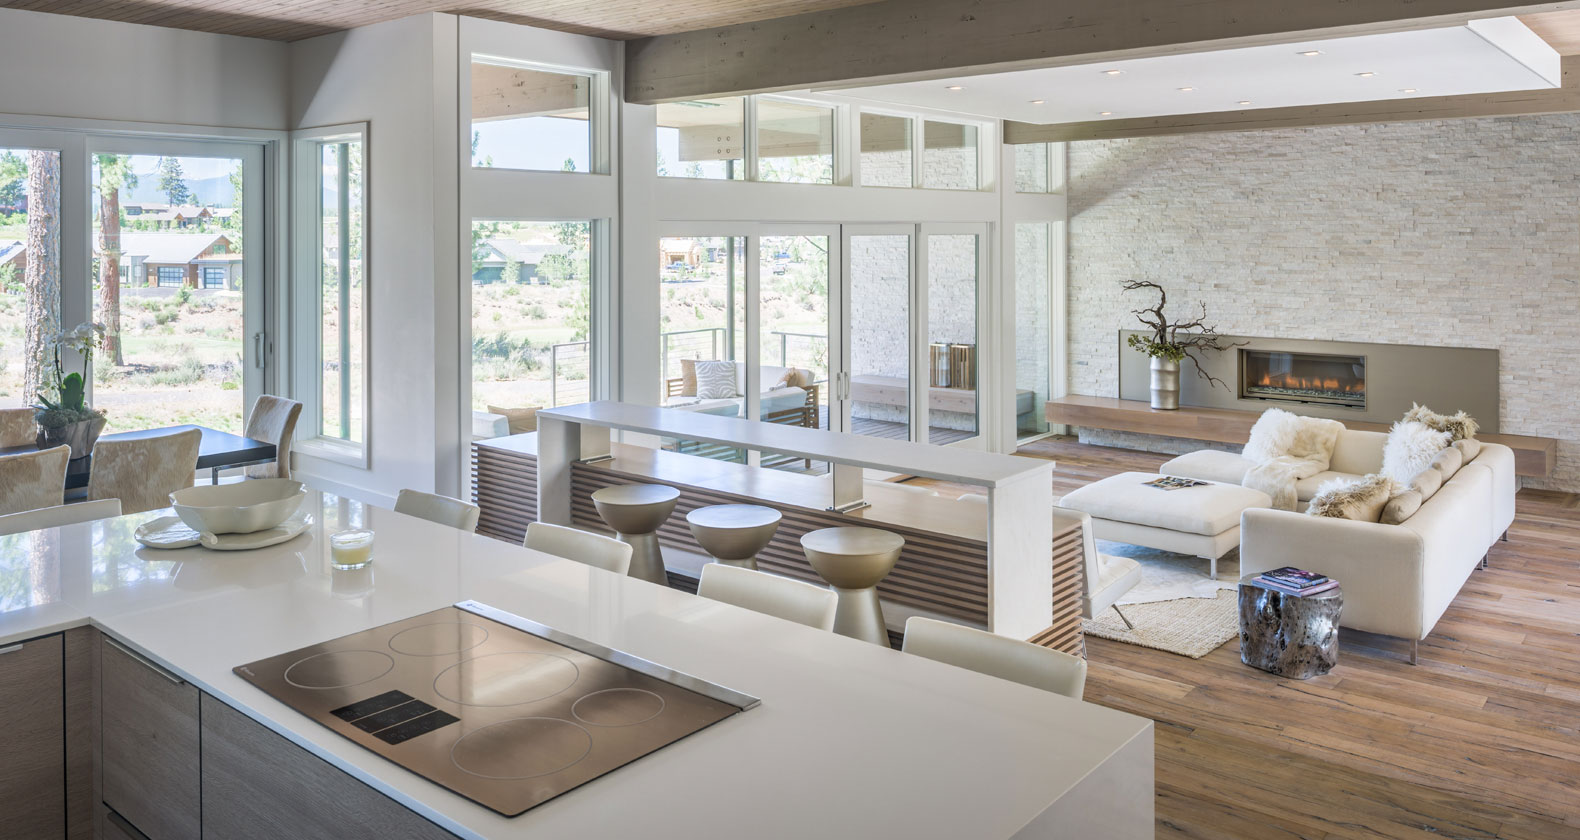 modern kitchen quartz modern architecture bend oregon tetherow golf dream home steel bridge outdoor living